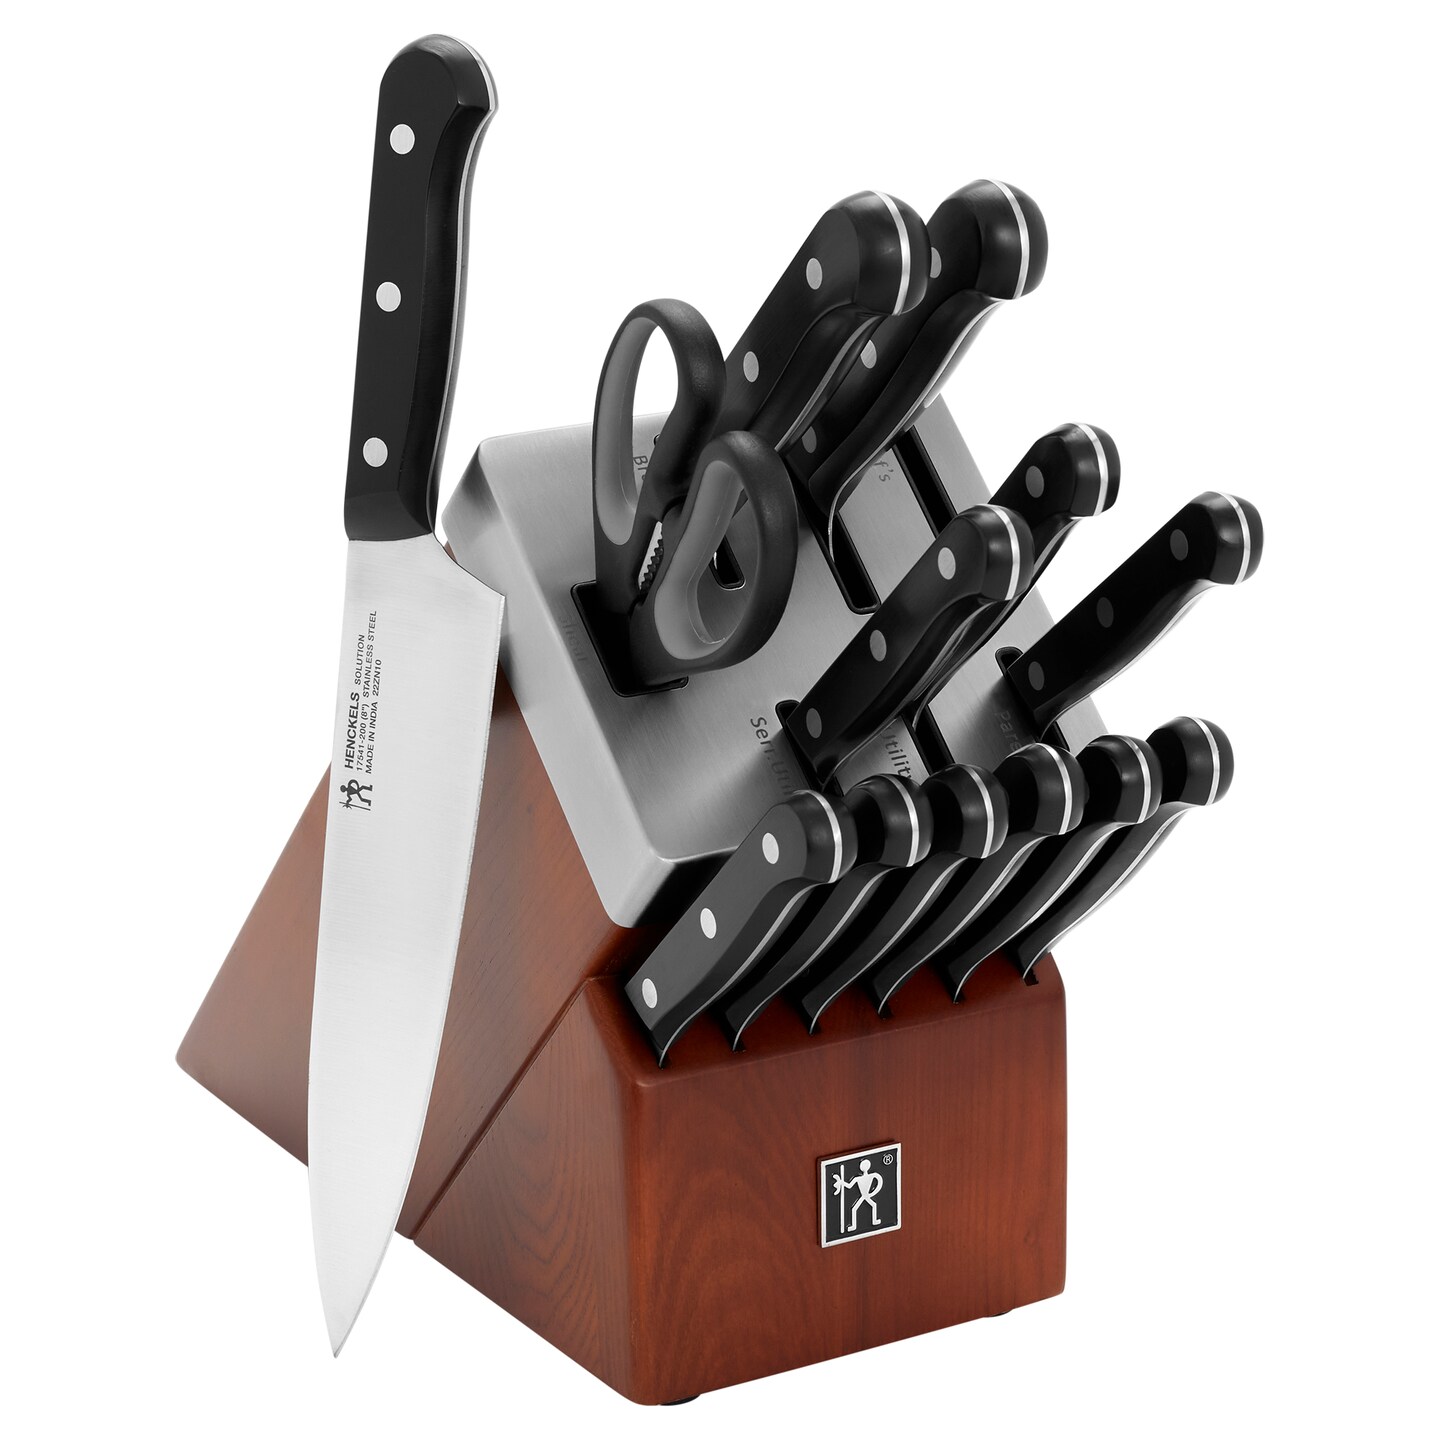 HENCKELS Solution Self-Sharpening Knife Block Set